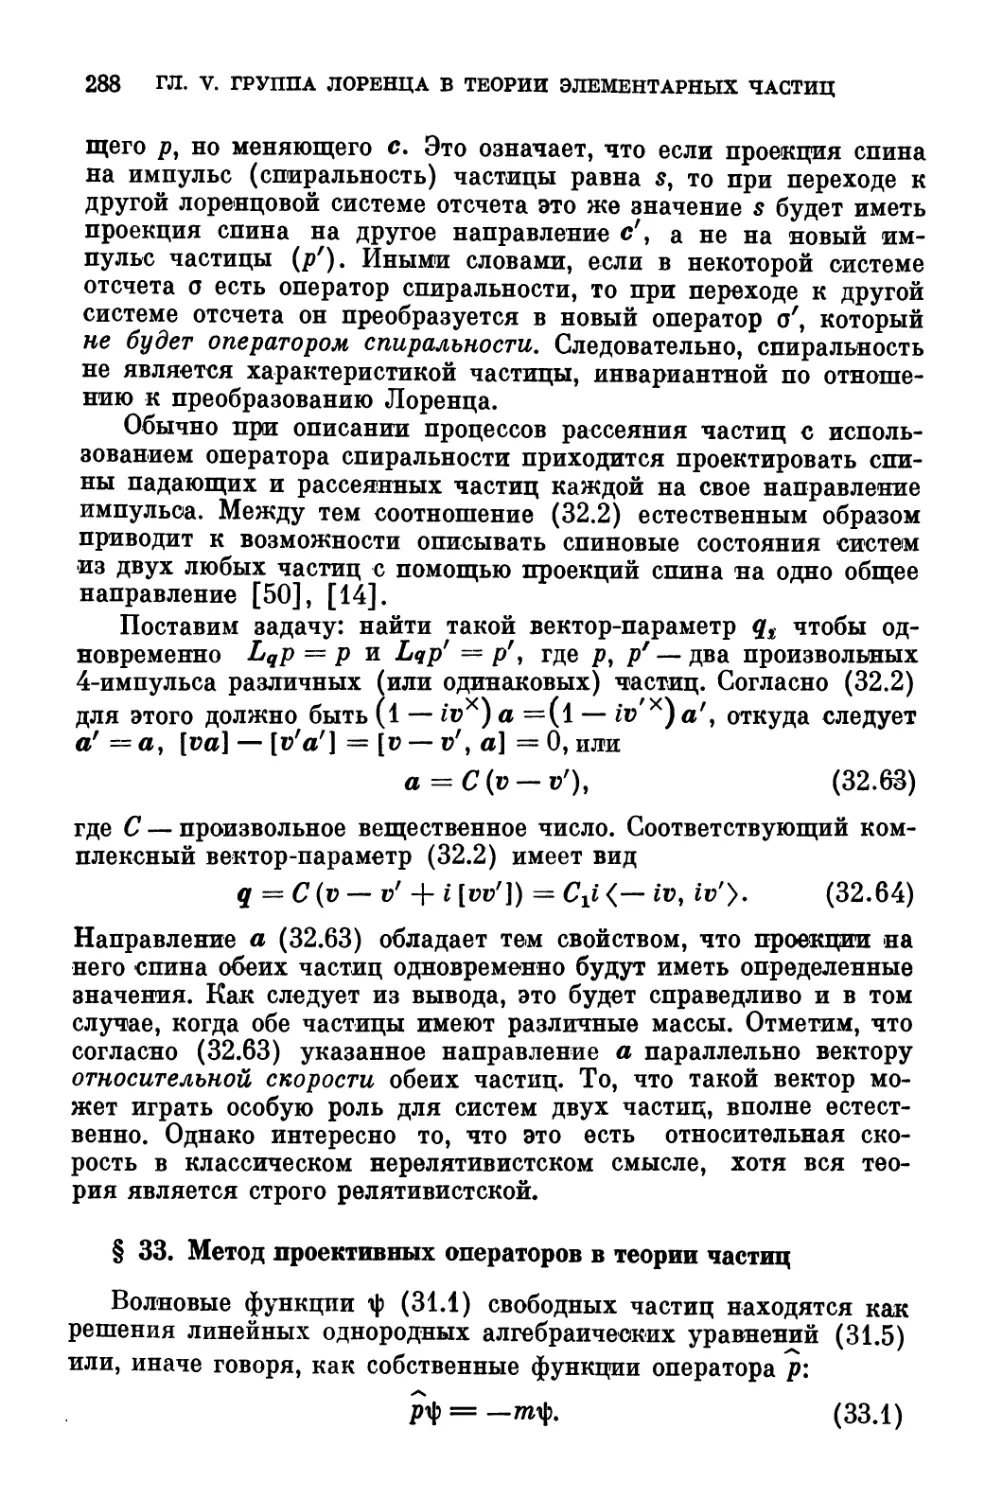 § 33. Метод проективных операторов в теории частиц